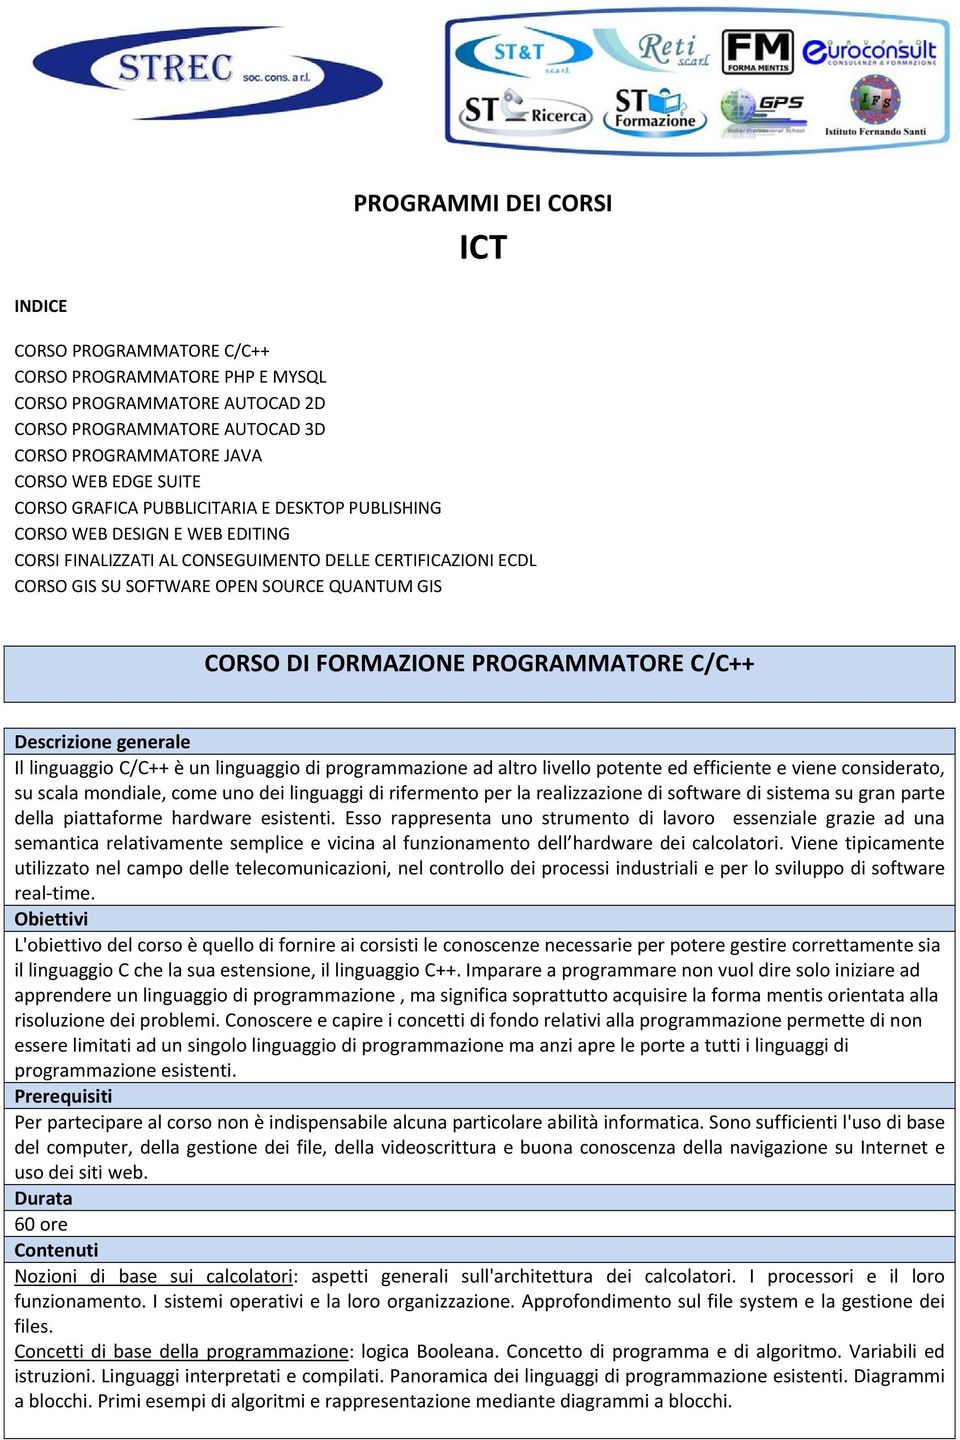 FORMAZIONE PROGRAMMATORE C/C++ Il linguaggio C/C++ è un linguaggio di programmazione ad altro livello potente ed efficiente e viene considerato, su scala mondiale, come uno dei linguaggi di